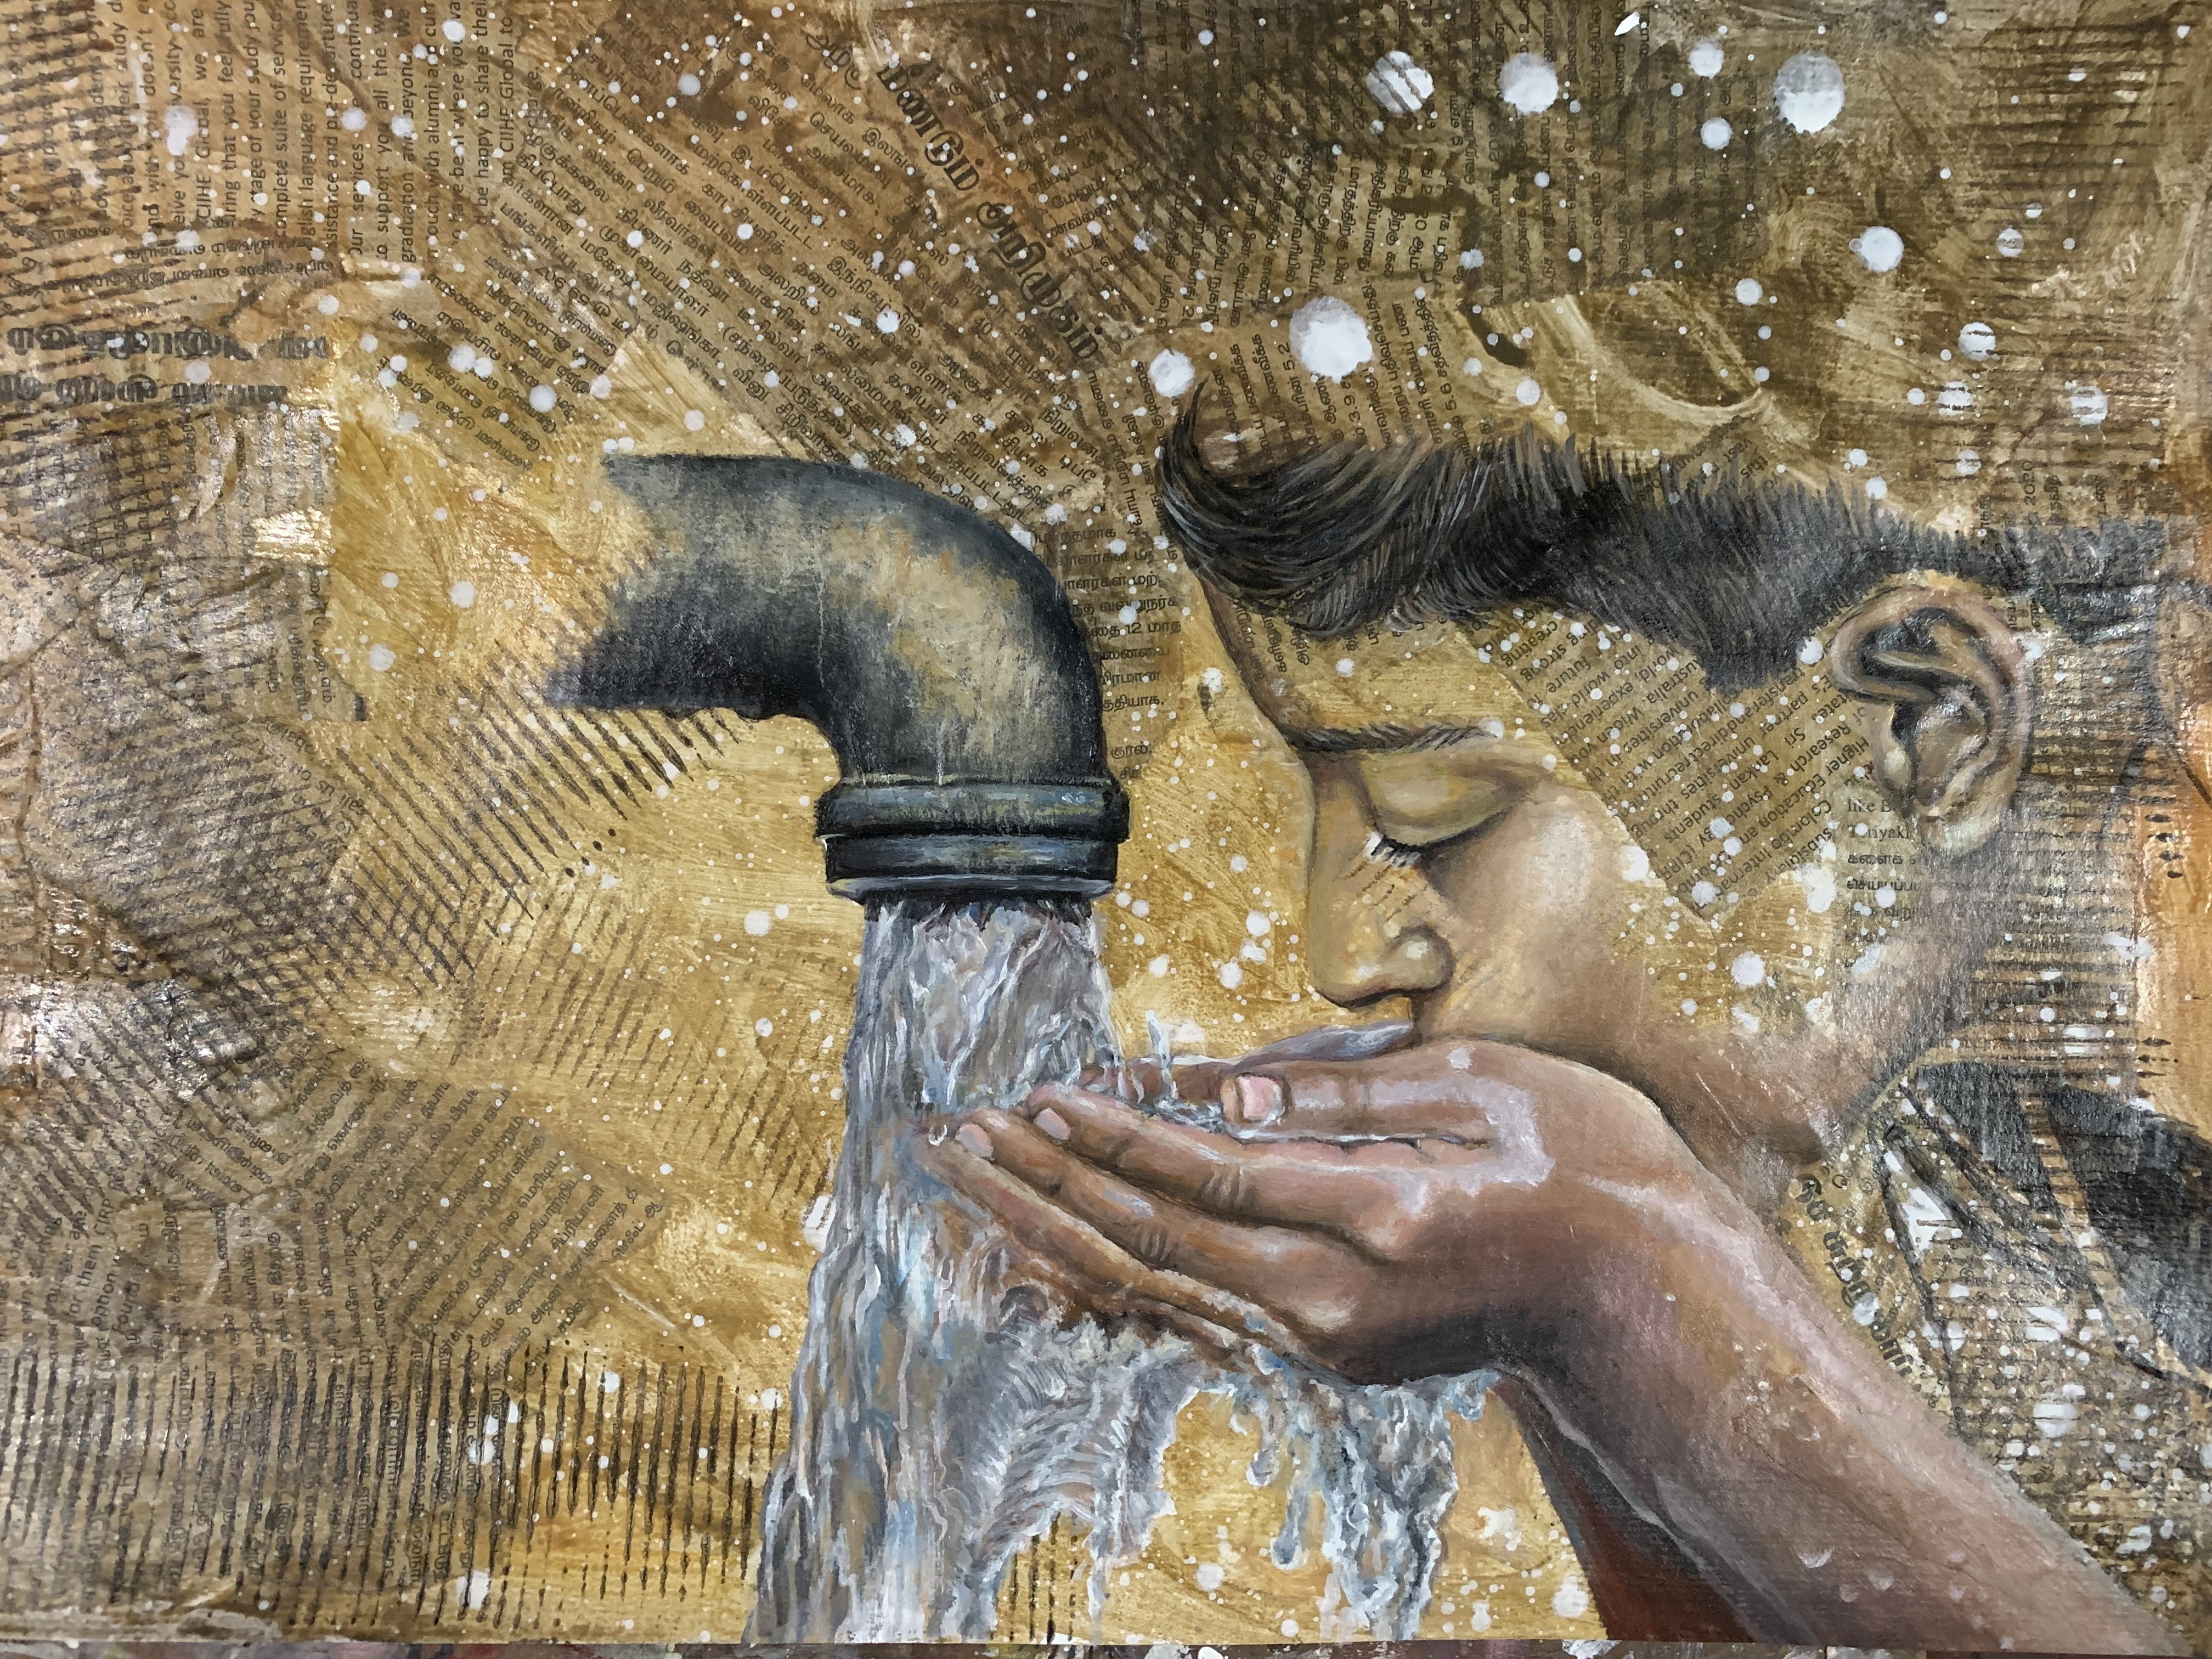 Water for children by Aruni Wijegunawardene